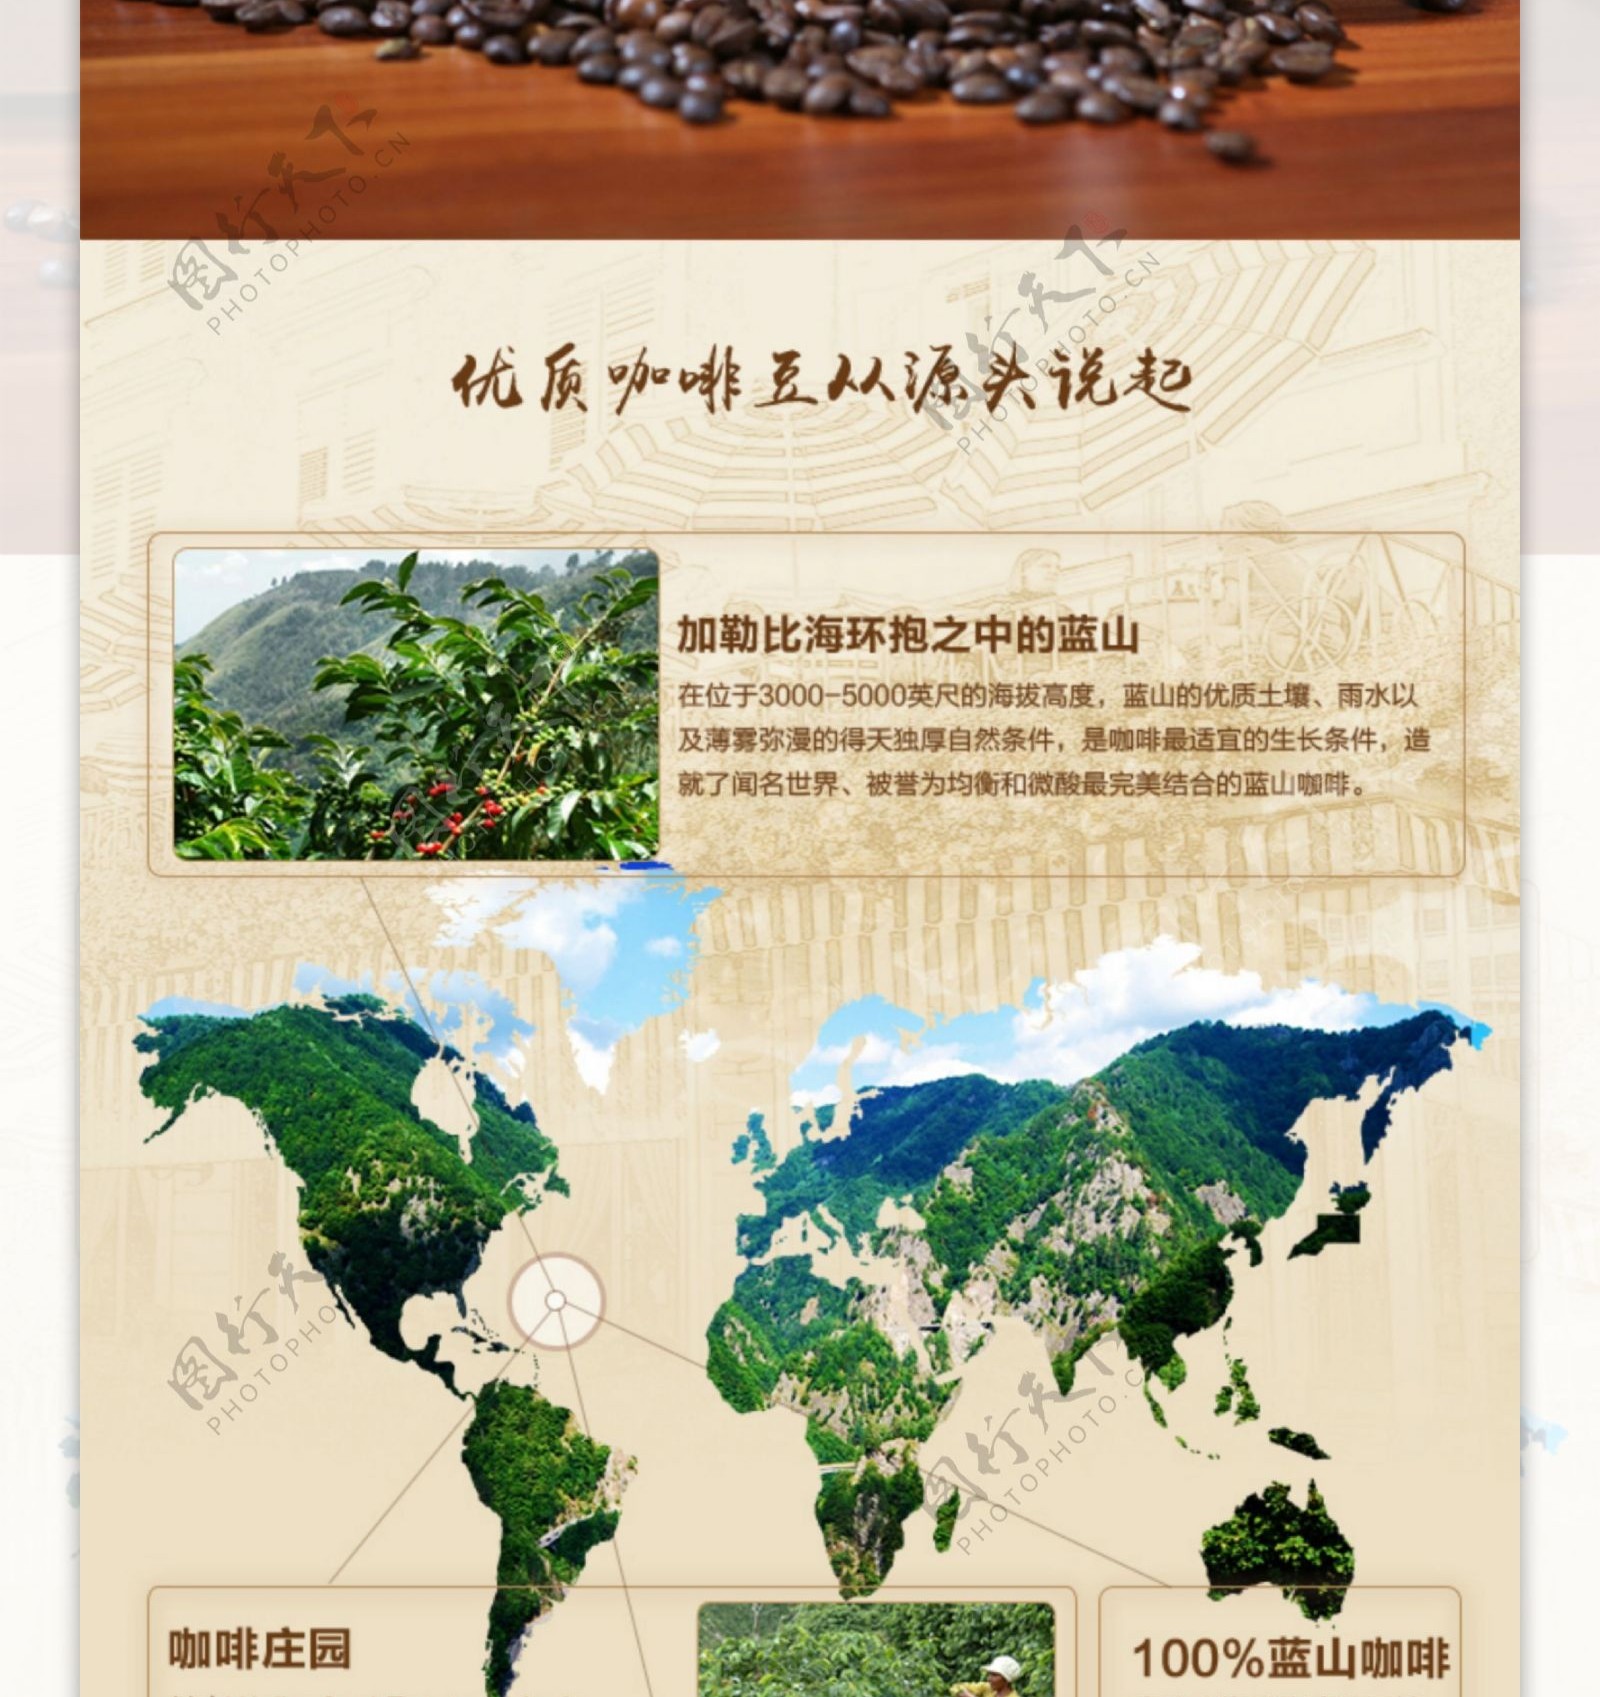 咖啡豆淘宝详情页咖啡